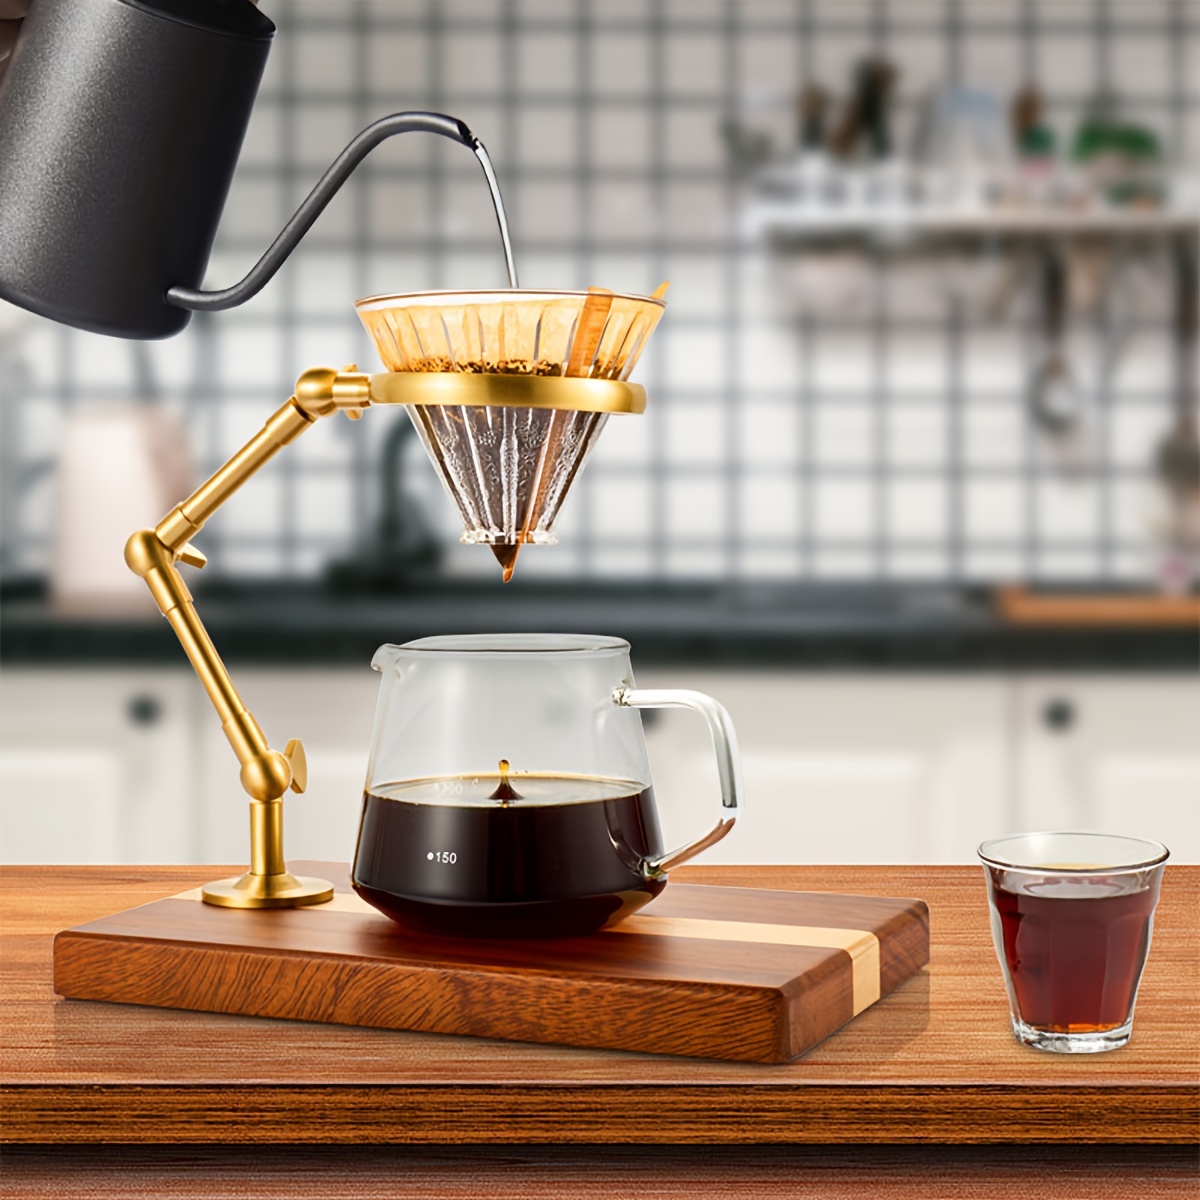 BINCOO-taza de café con filtro de goteo manual, juego de olla para  compartir por goteo